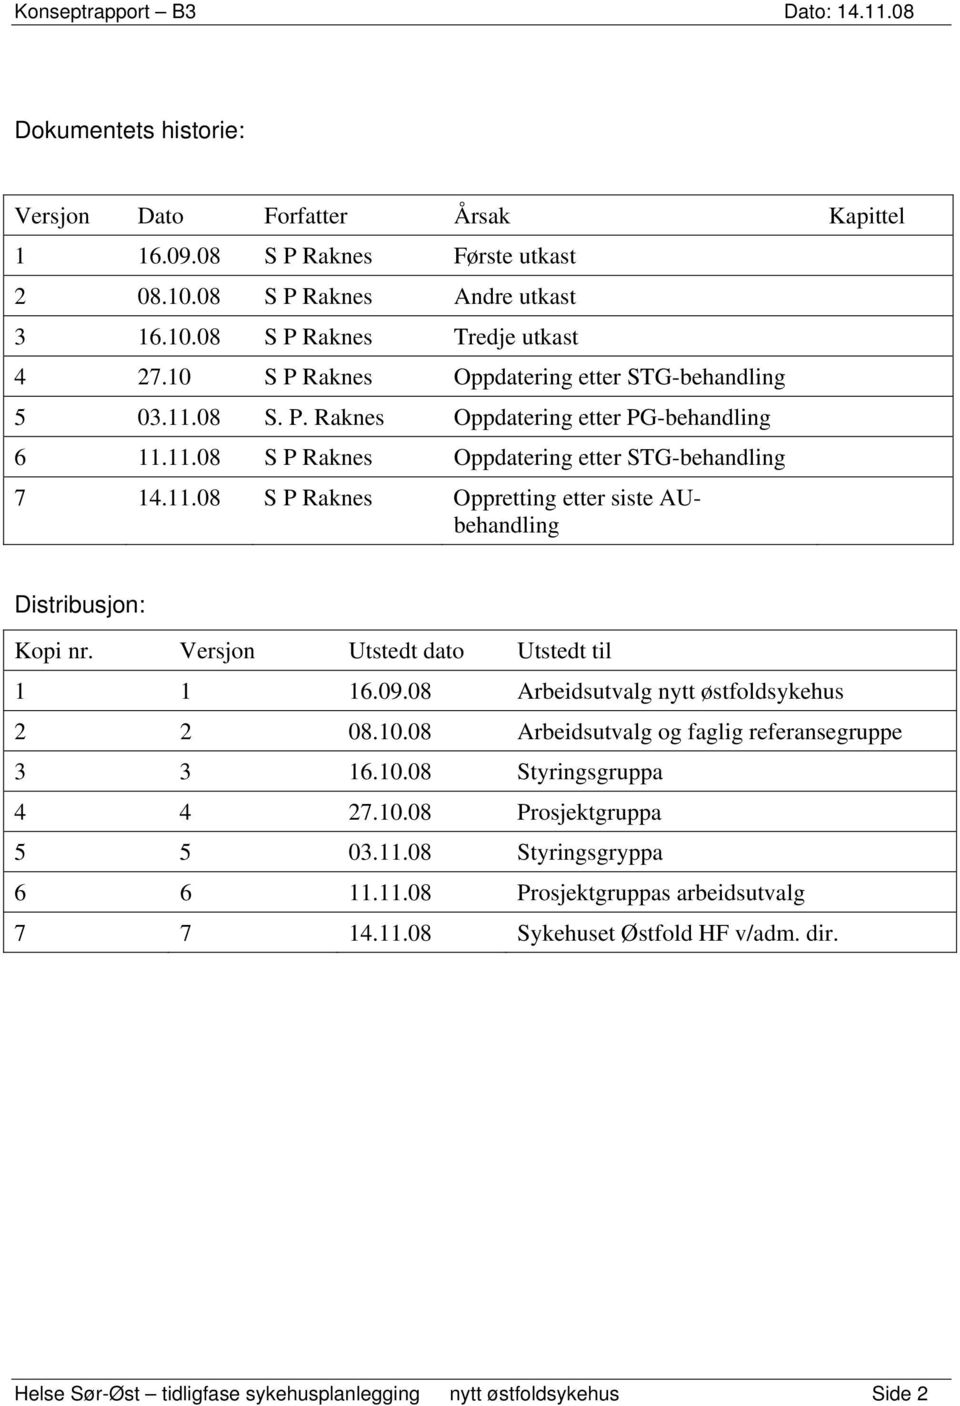 Versjon Utstedt dato Utstedt til 1 1 16.09.08 Arbeidsutvalg nytt østfoldsykehus 2 2 08.10.08 Arbeidsutvalg og faglig referansegruppe 3 3 16.10.08 Styringsgruppa 4 4 27.10.08 Prosjektgruppa 5 5 03.